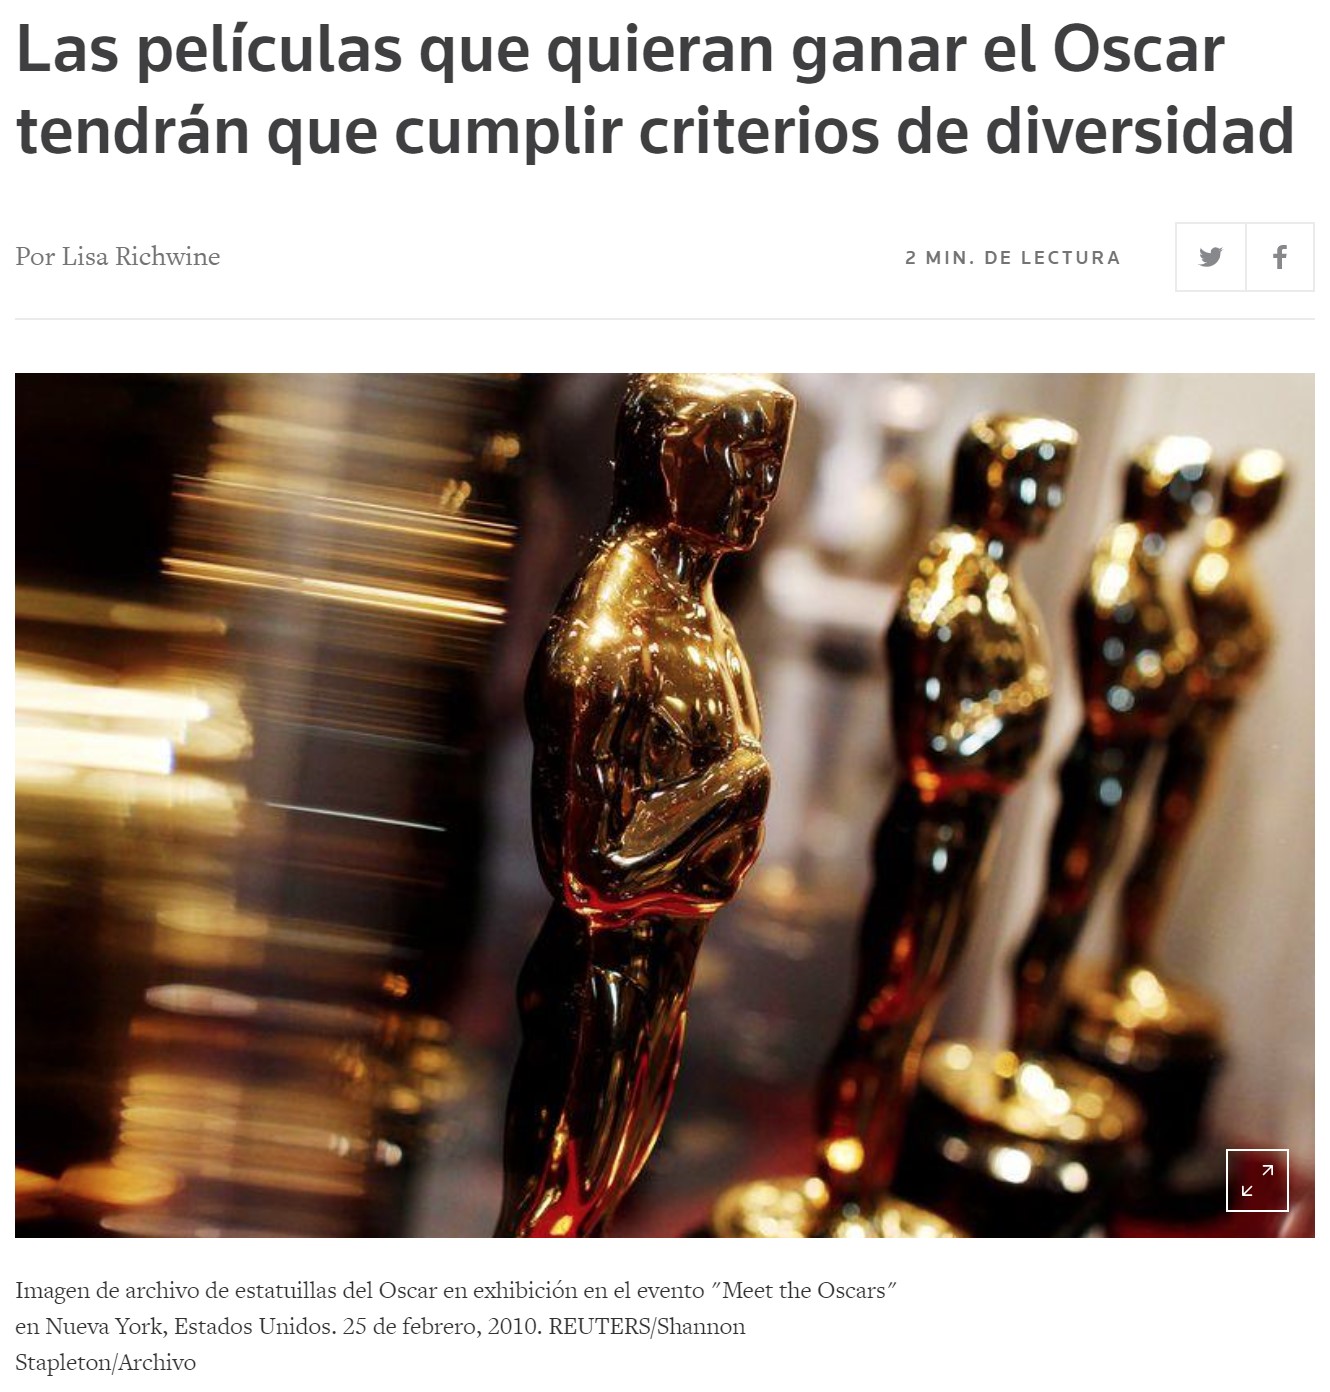 Si tu pel铆cula no es inclusiva, no podr谩s optar a los Oscar